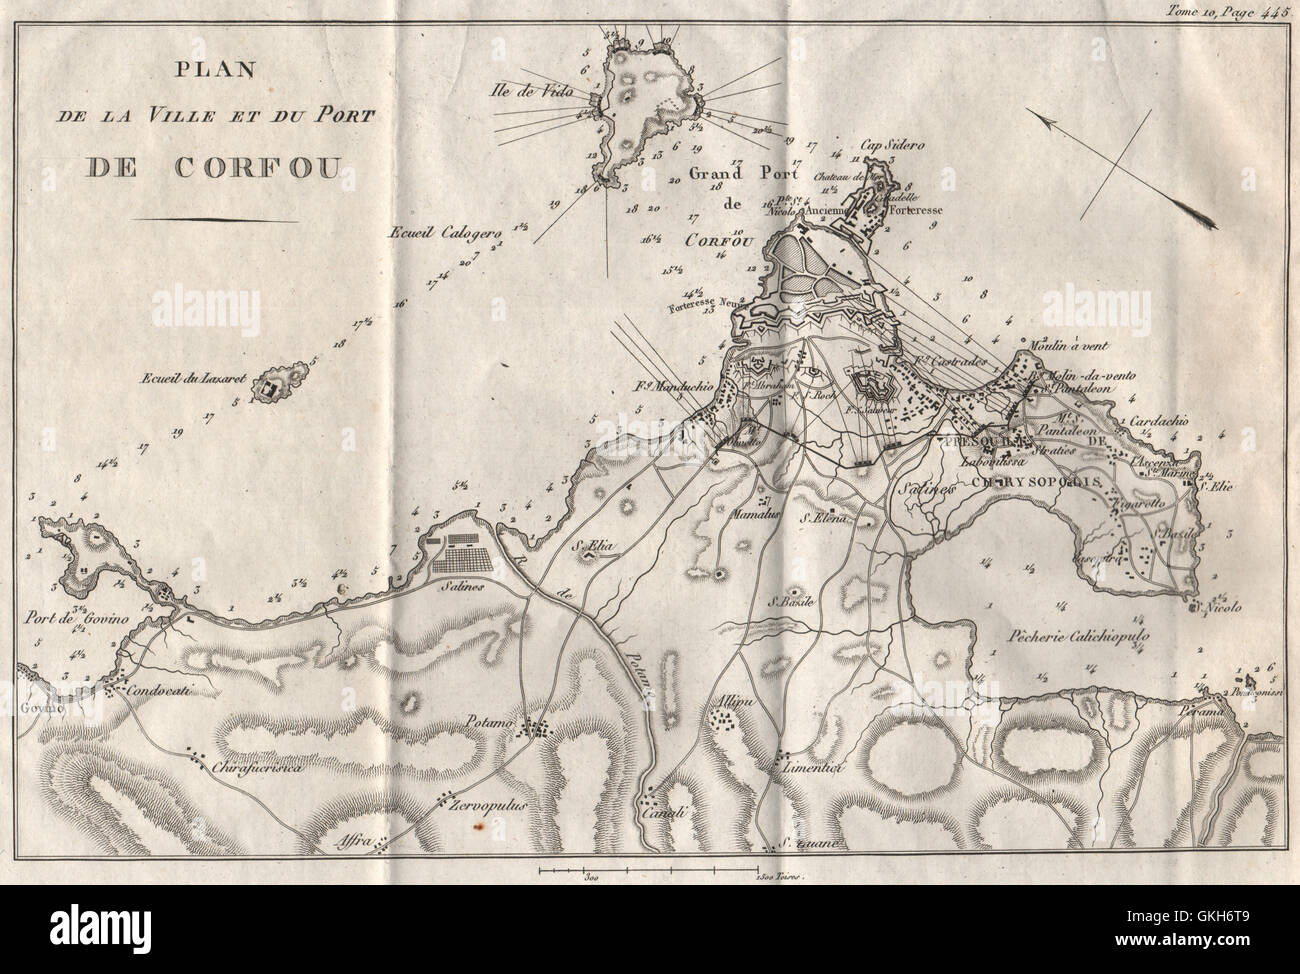 Korfu-Stadt & Port. Belagerung von Korfu 1798-99. Griechenland, 1818 Antike Landkarte Stockfoto